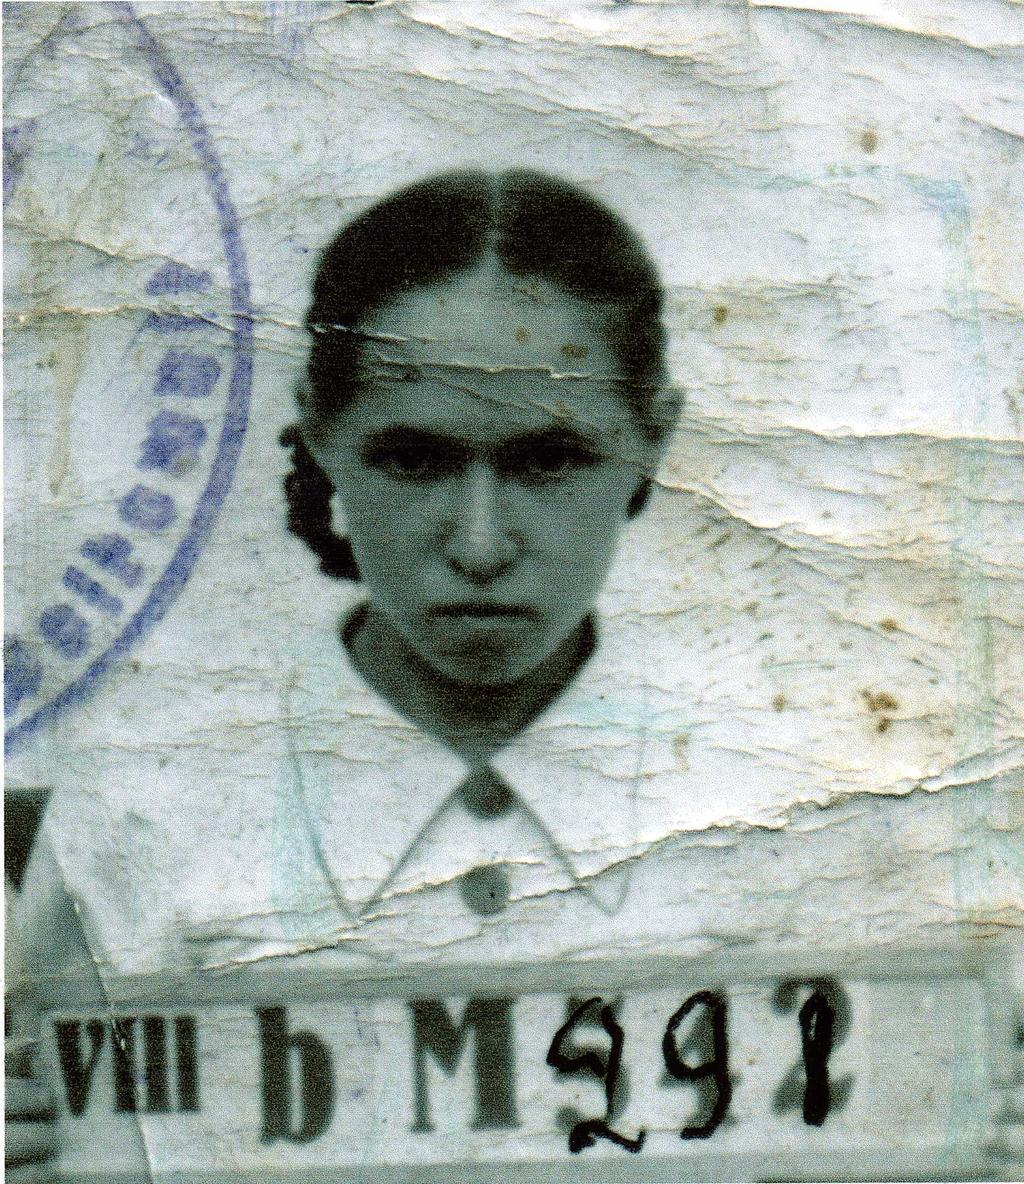 Фото №89856. Фото. Серебрякова М. А. Концлагерь г. Волковыска. 1943